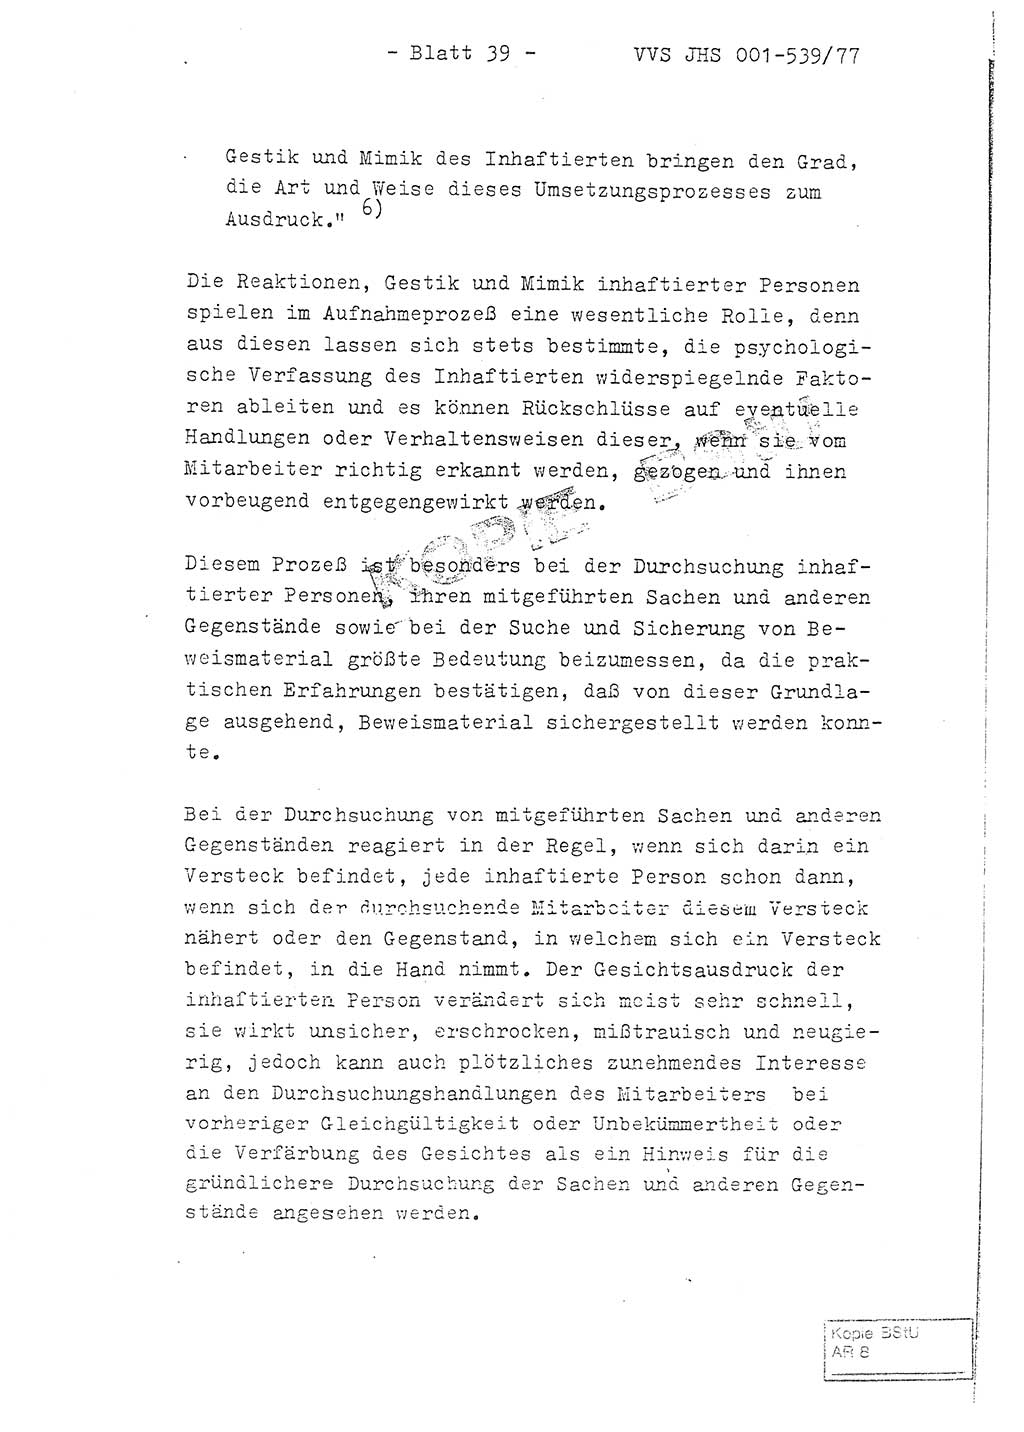 Fachschulabschlußarbeit Hauptmann Dietrich Jung (Abt. ⅩⅣ), Leutnant Klaus Klötzner (Abt. ⅩⅣ), Ministerium für Staatssicherheit (MfS) [Deutsche Demokratische Republik (DDR)], Juristische Hochschule (JHS), Vertrauliche Verschlußsache (VVS) 001-539/77, Potsdam 1978, Seite 39 (FS-Abschl.-Arb. MfS DDR JHS VVS 001-539/77 1978, S. 39)